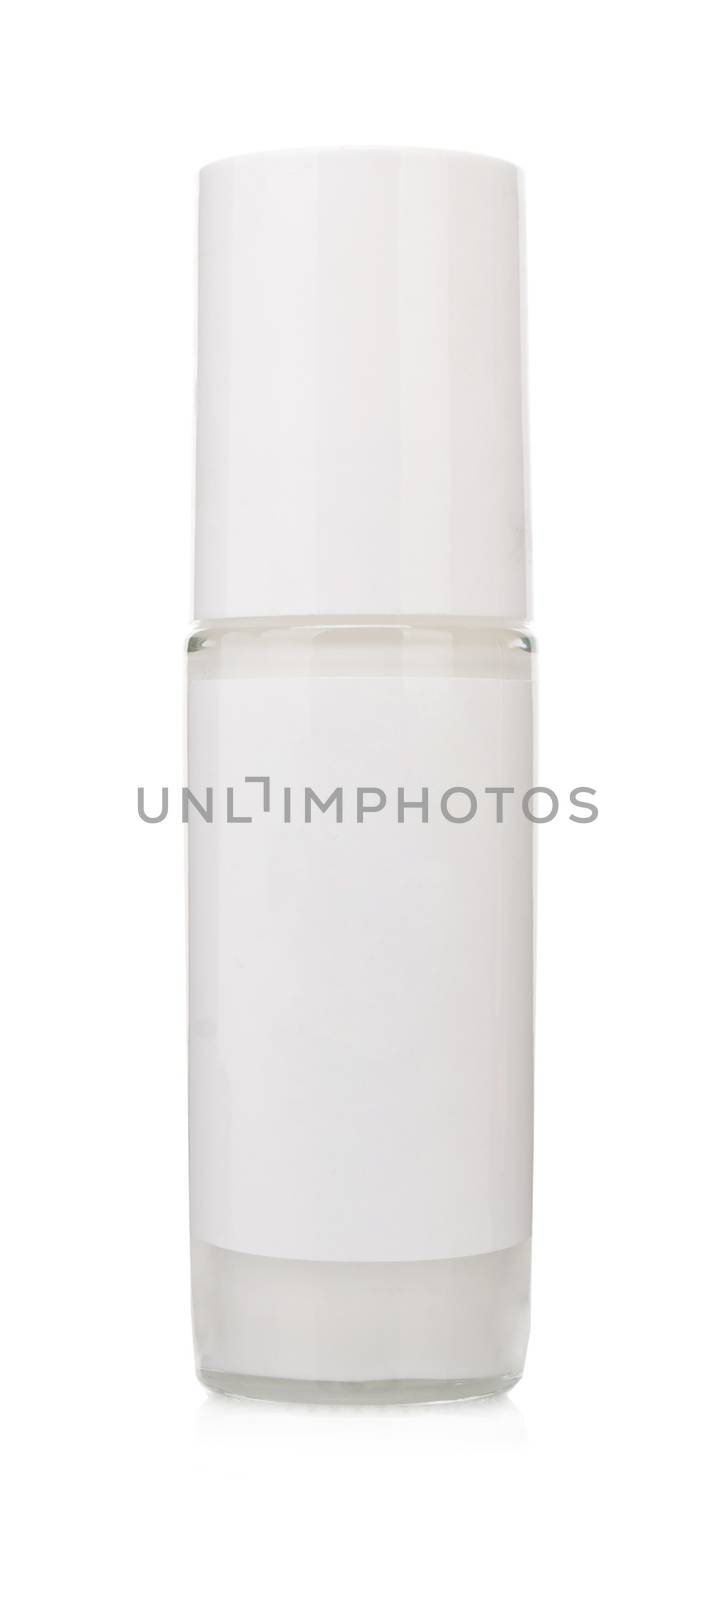 nail polish bottle on white background